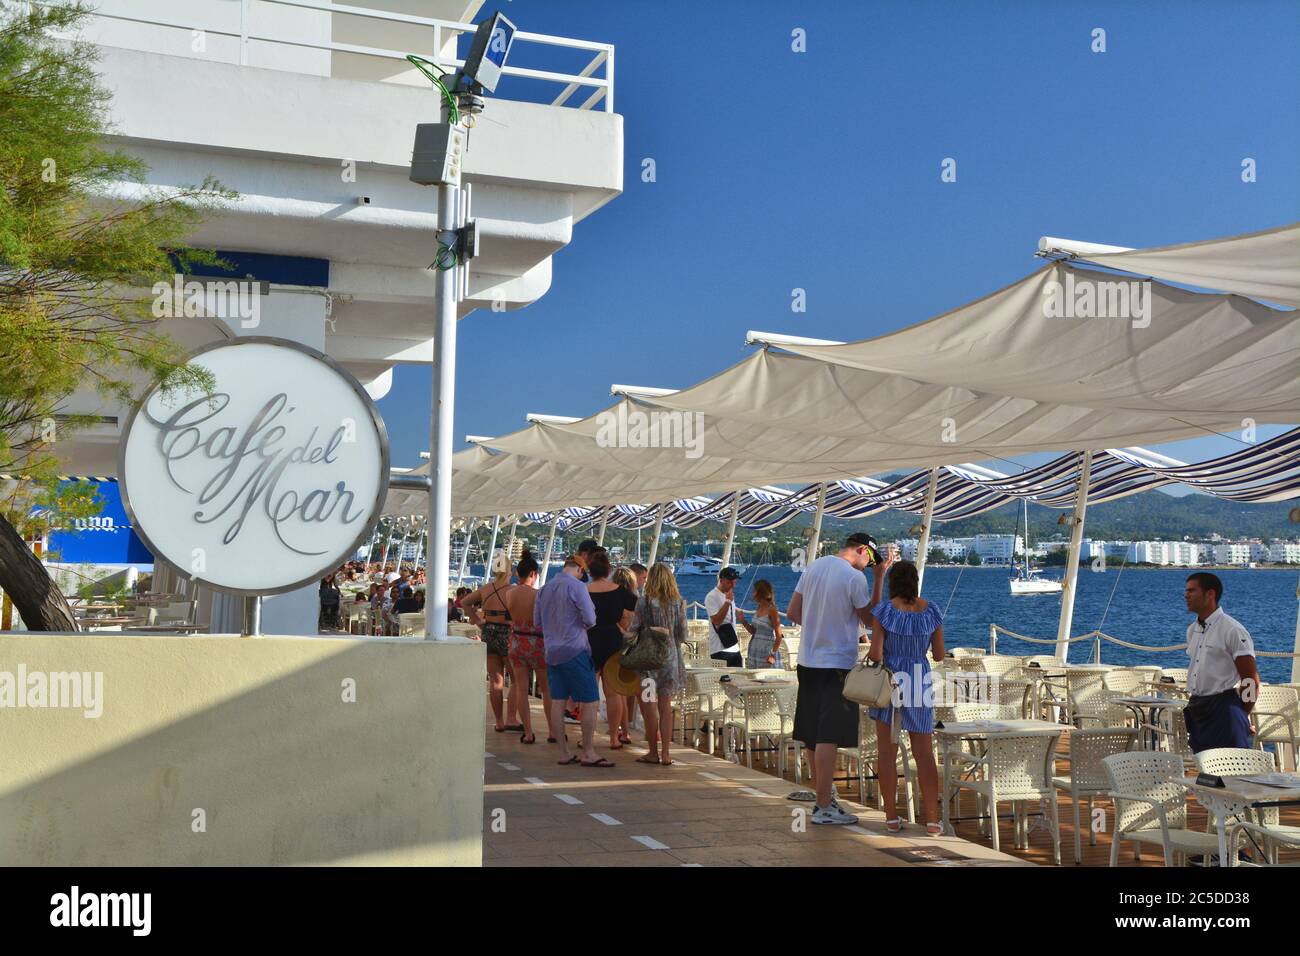 IBIZA, SPAGNA - 12 LUGLIO 2017: Cafe del Mar a San Antonio de Portmany sull'isola di Ibiza. E' un famoso bar sul mare con le migliori vedute del tramonto con l Foto Stock